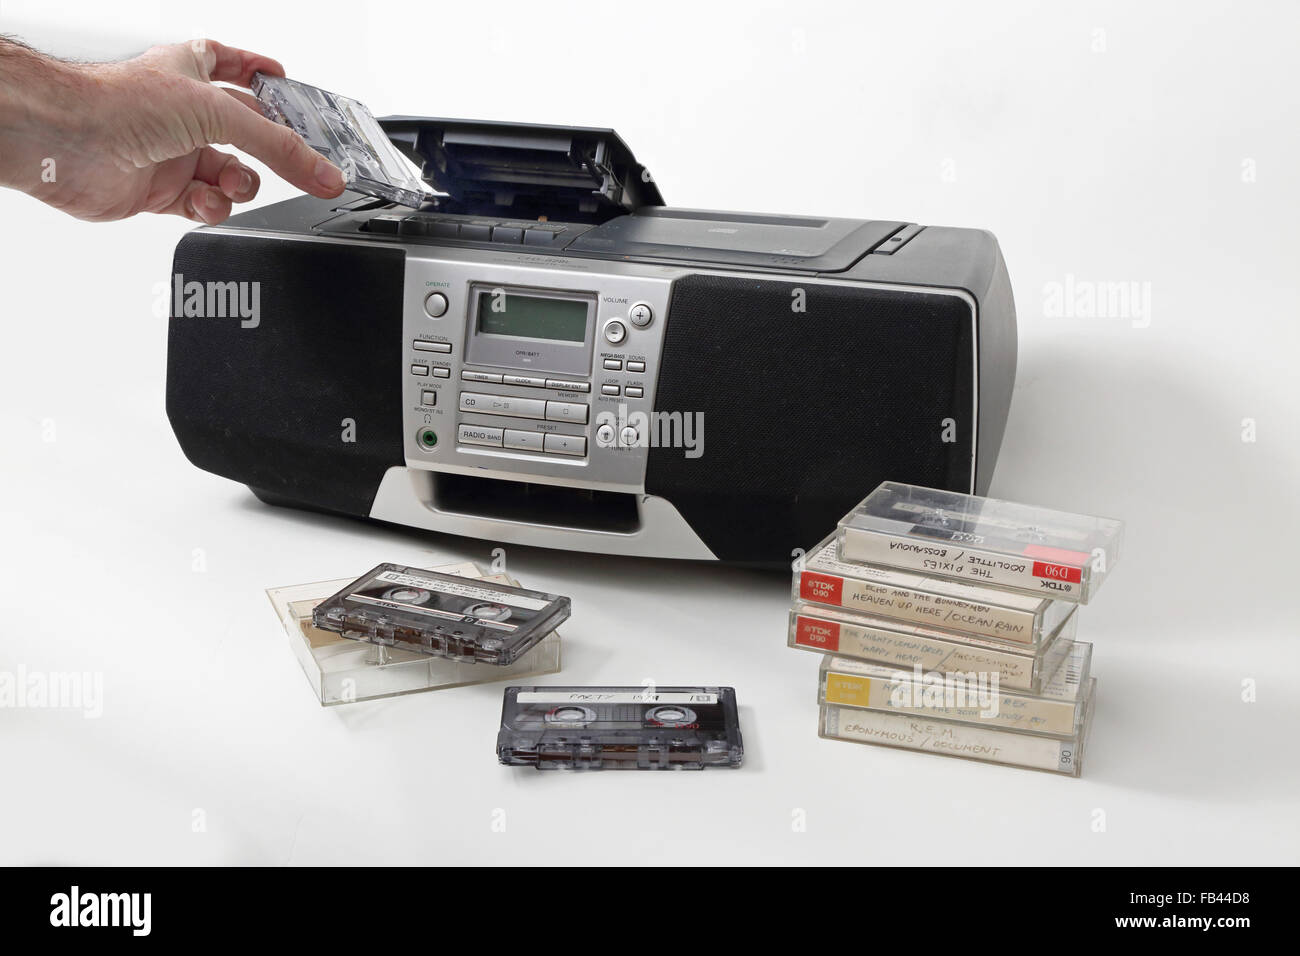 Eine Haus aufgenommen Kassette eingelegt in a1990s Stil Kassette, Radio und und einem CD-Player ausgestattet. Bänder in den Vordergrund gestapelt. Stockfoto